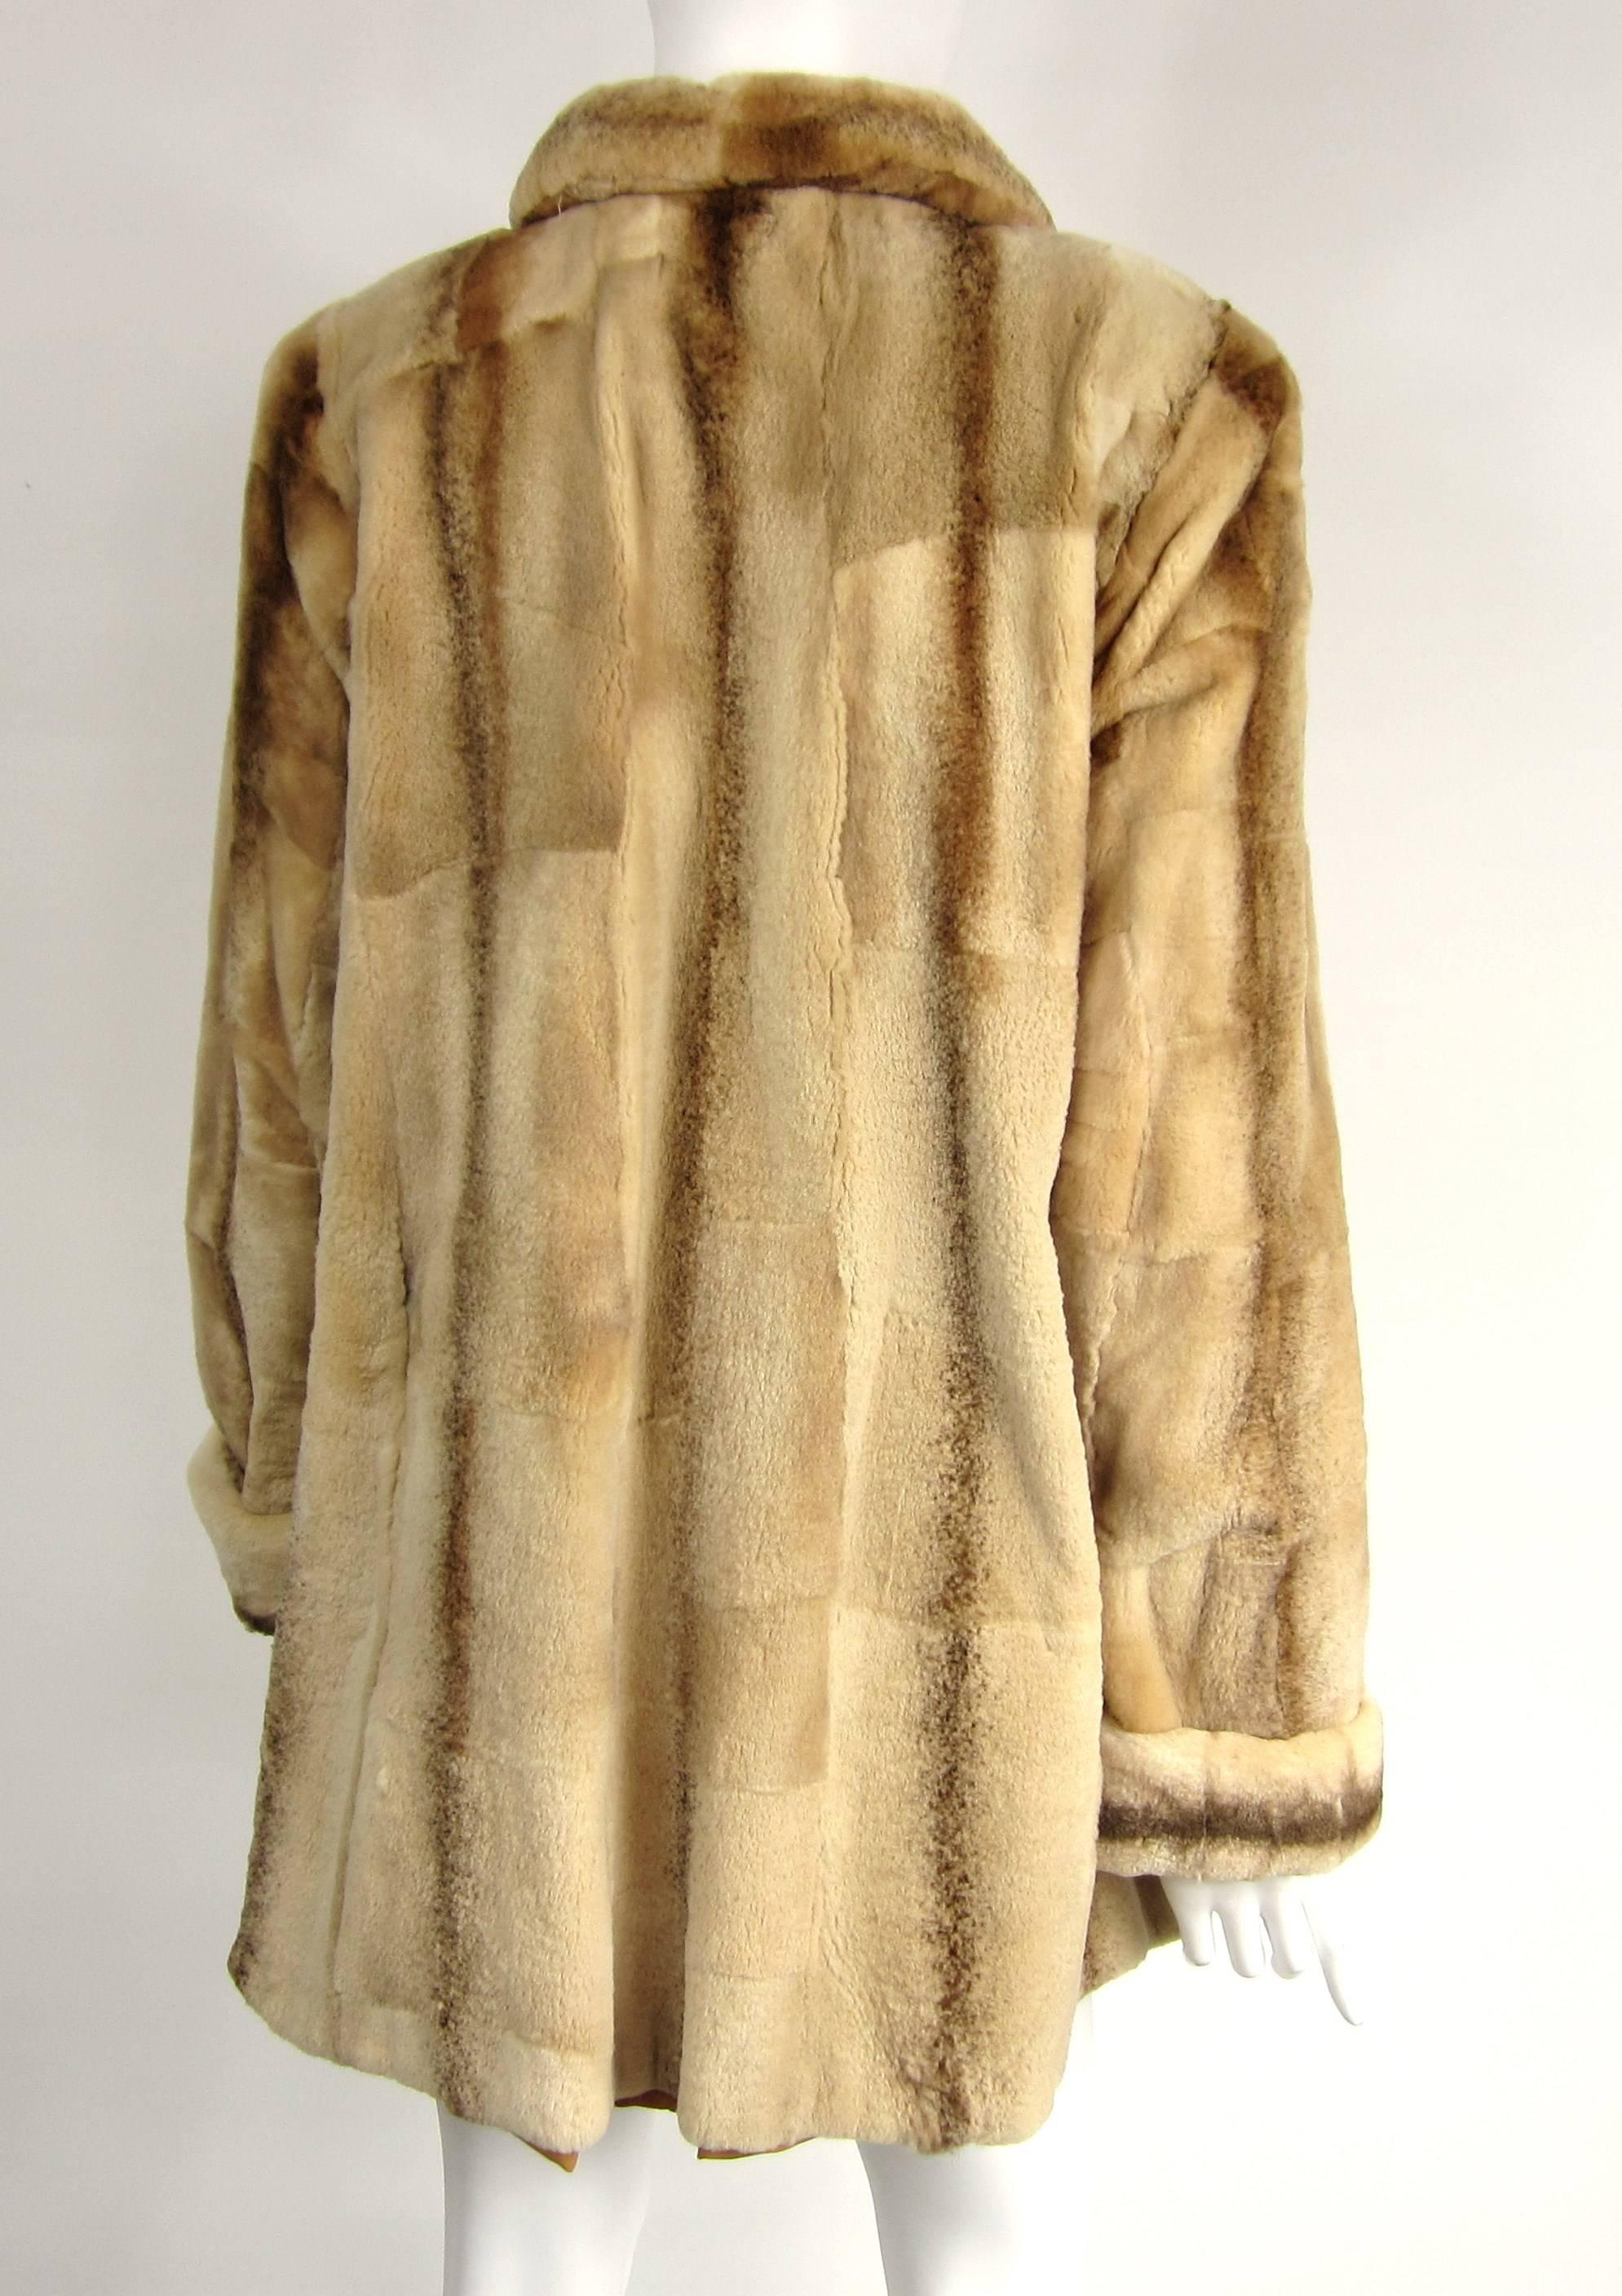 Brown Sheared Fur Mink Vintage Short Jacket Coat 